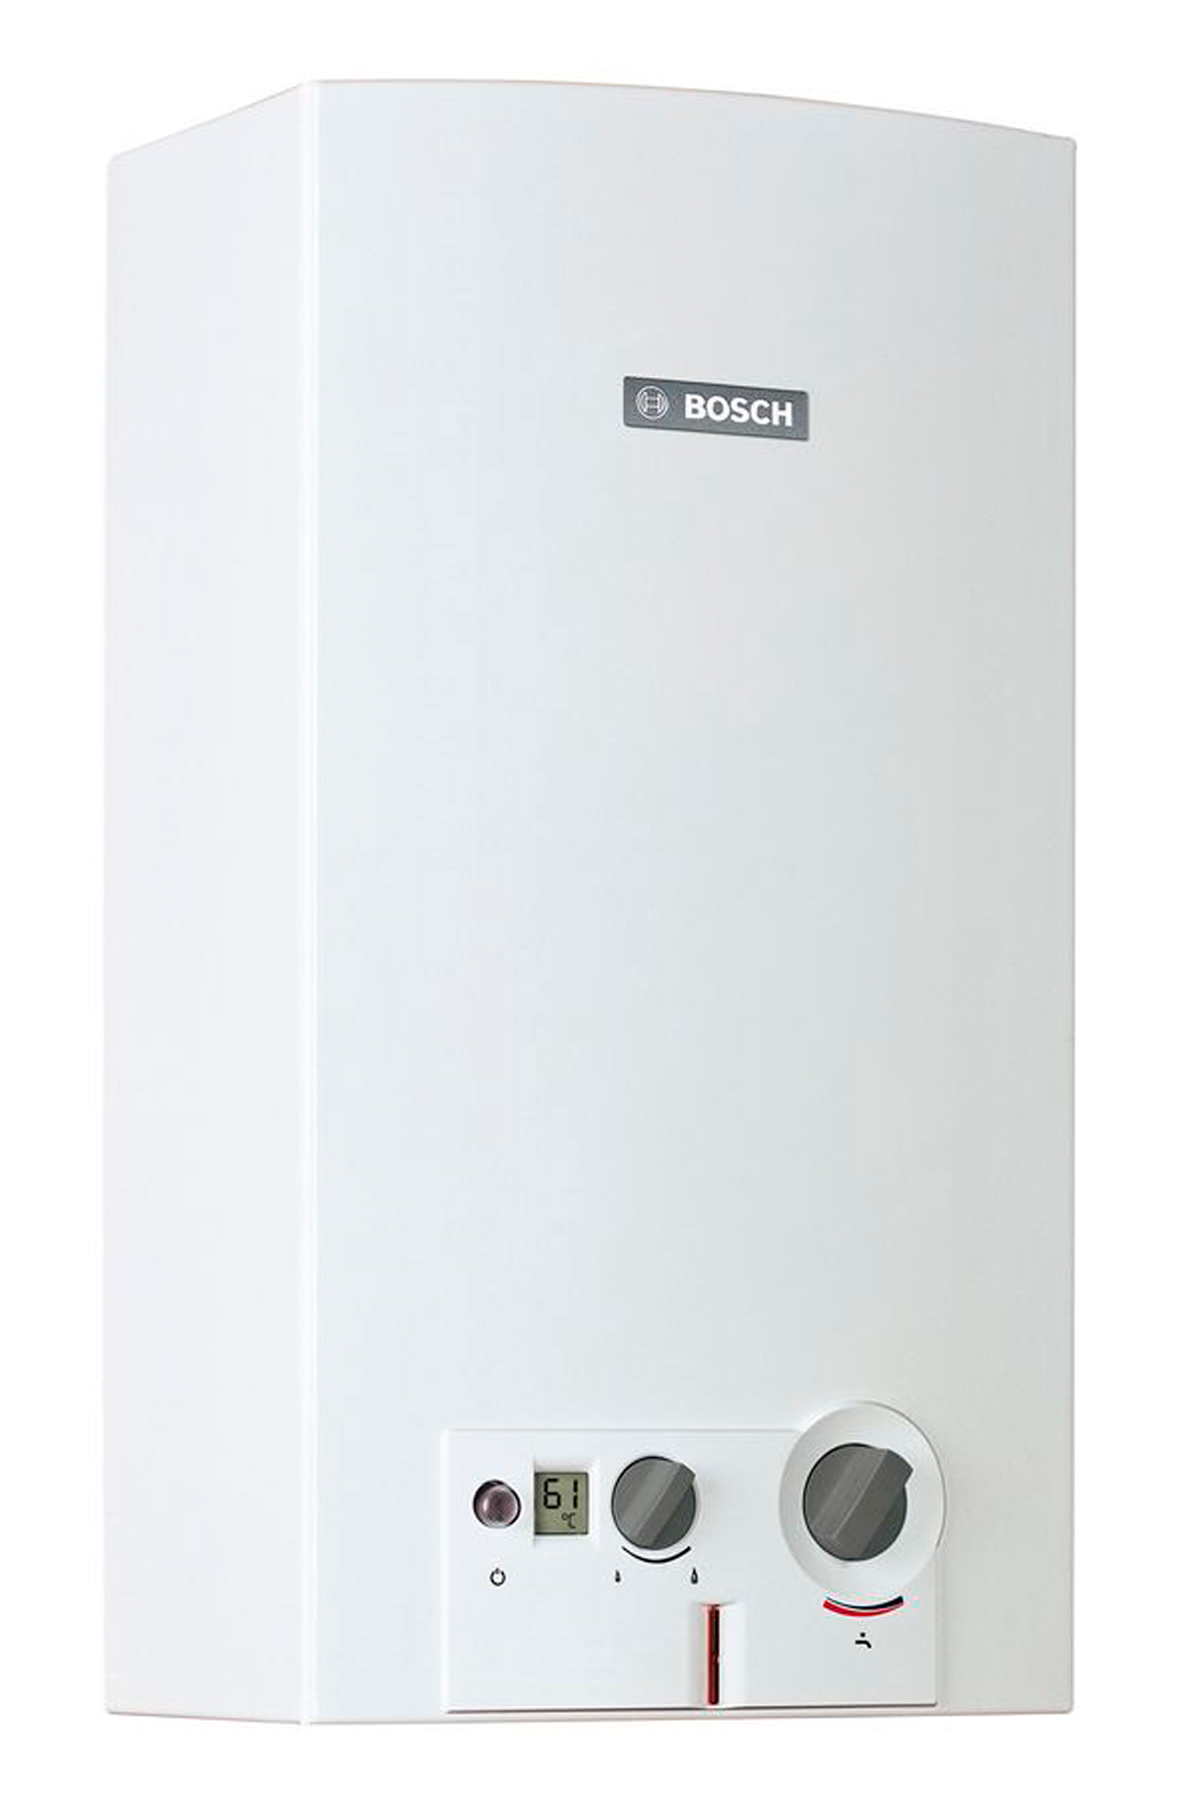 Купить газовая колонка с модуляцией пламени Bosch Therm 6000 O WRD 10-2 G (7701331616) в Киеве